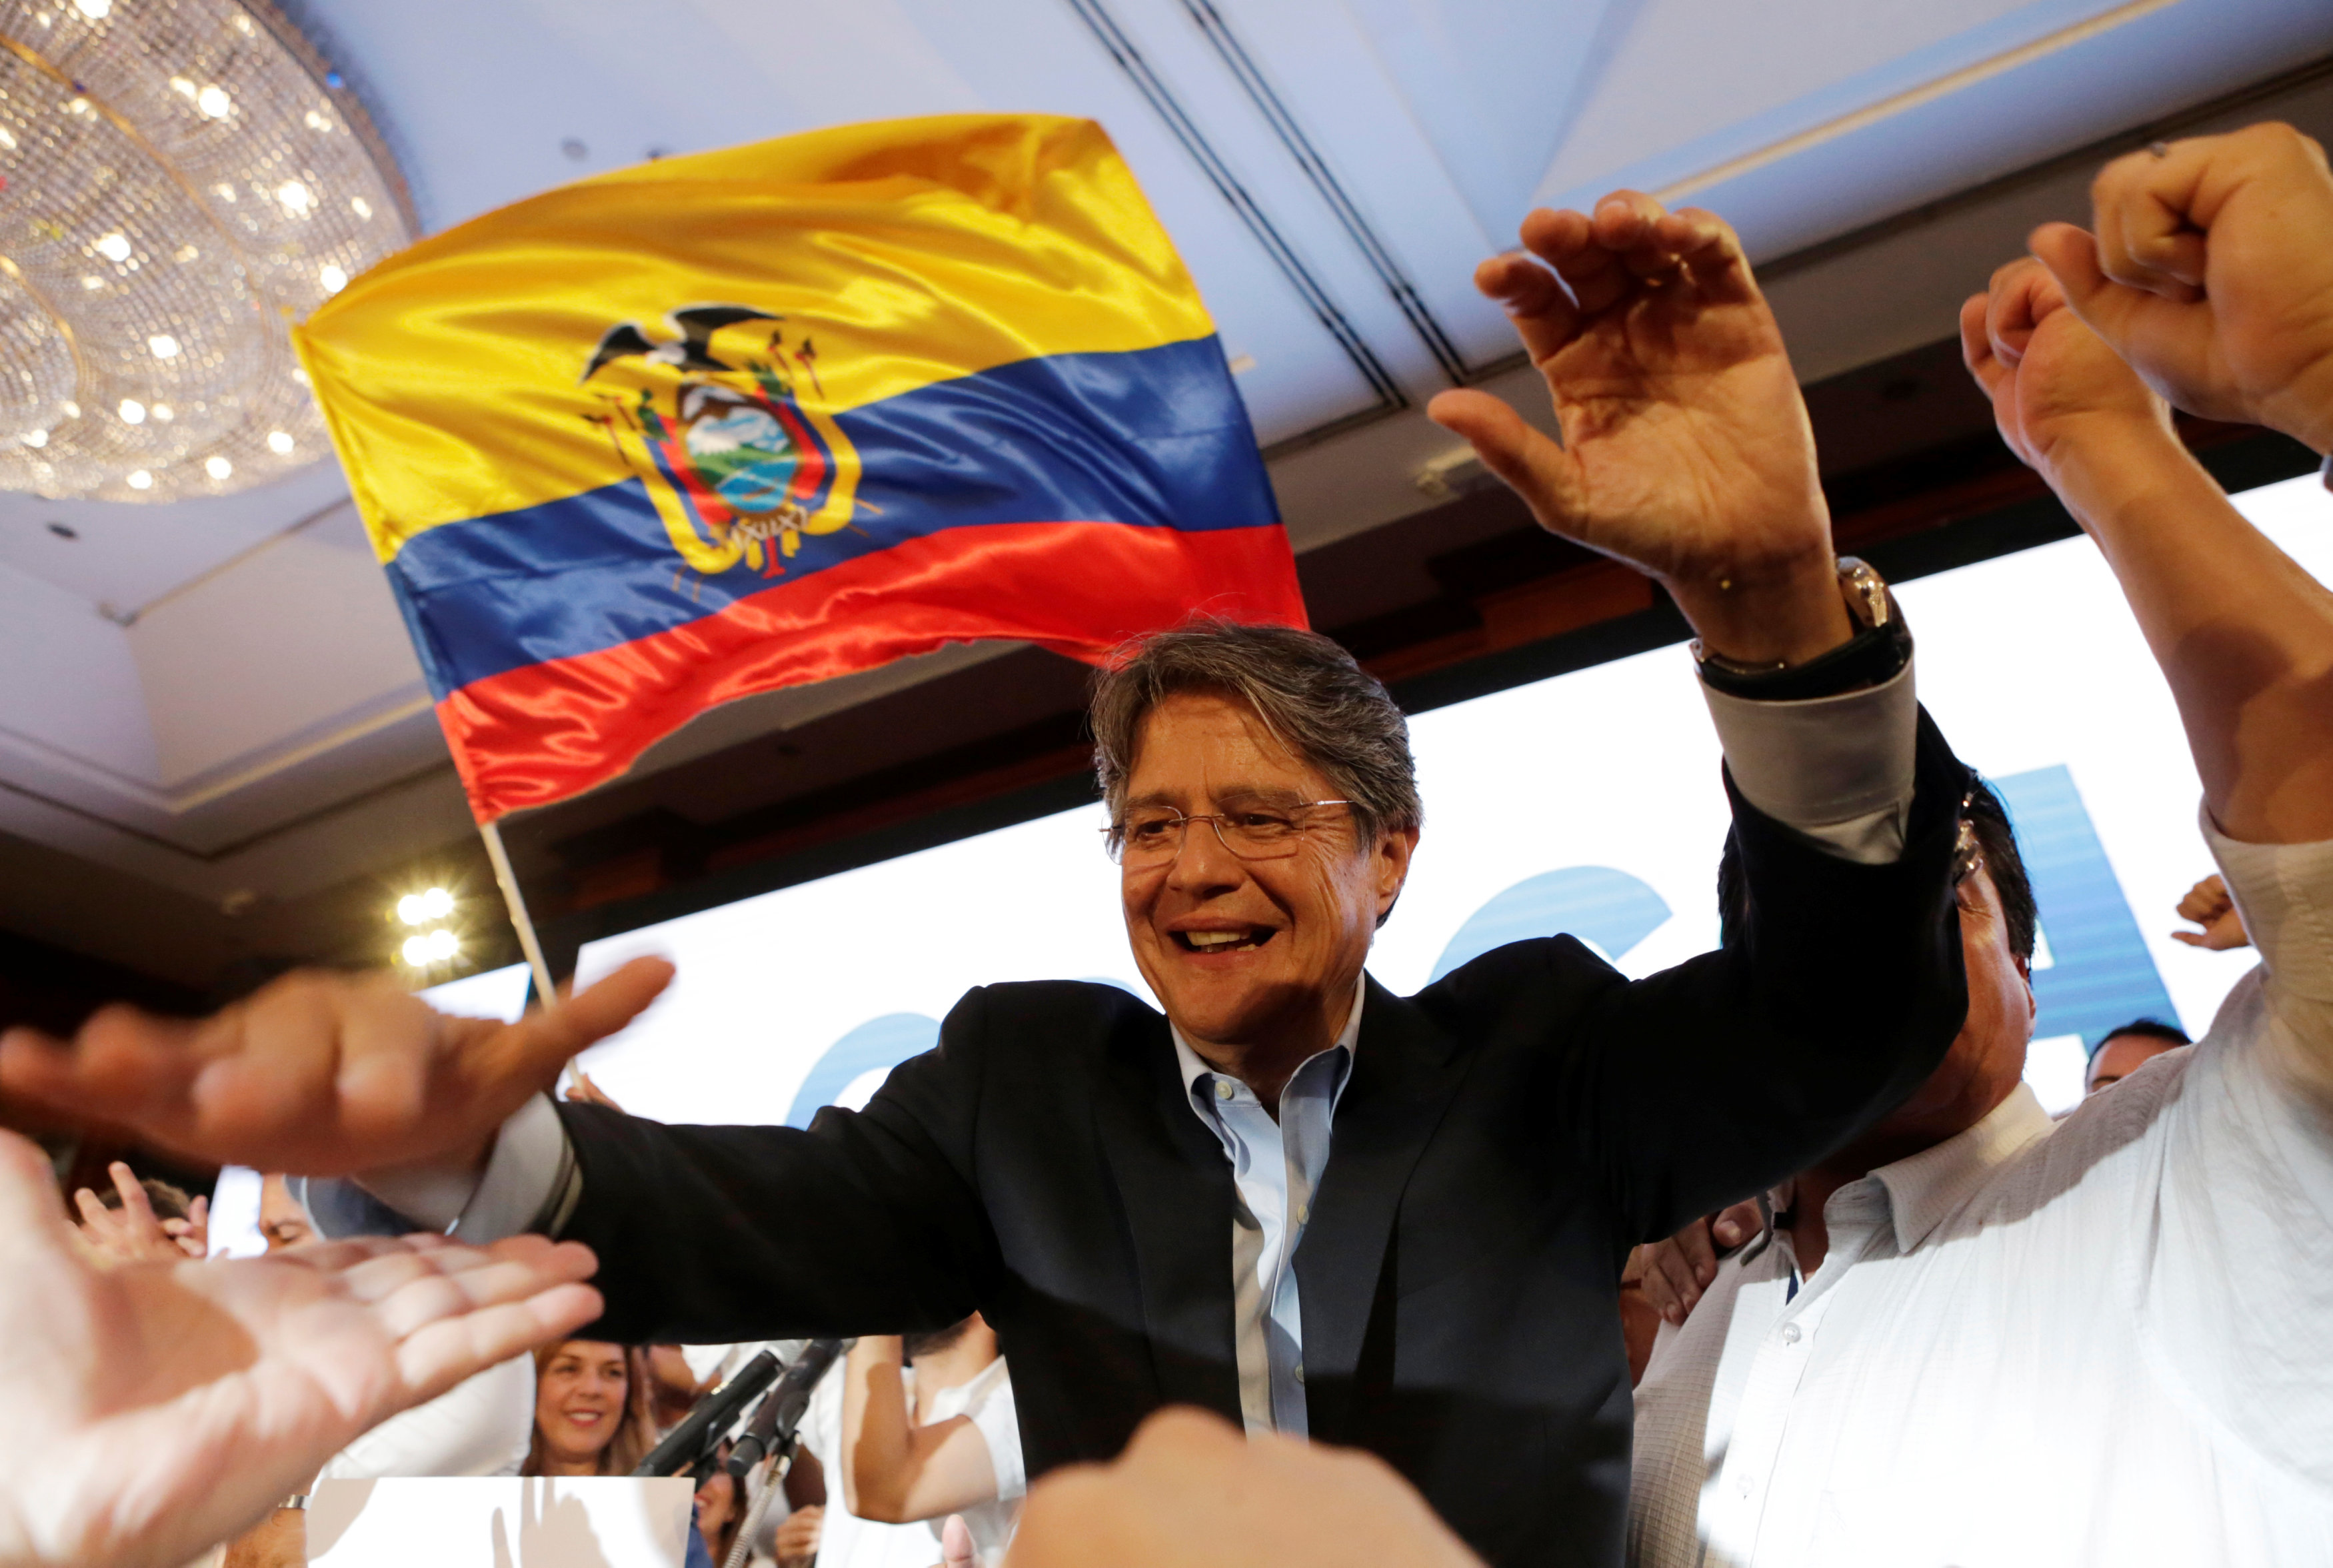 جوليرمو لاسو المرشح لرئاسة الإكوادور وسط أنصاره